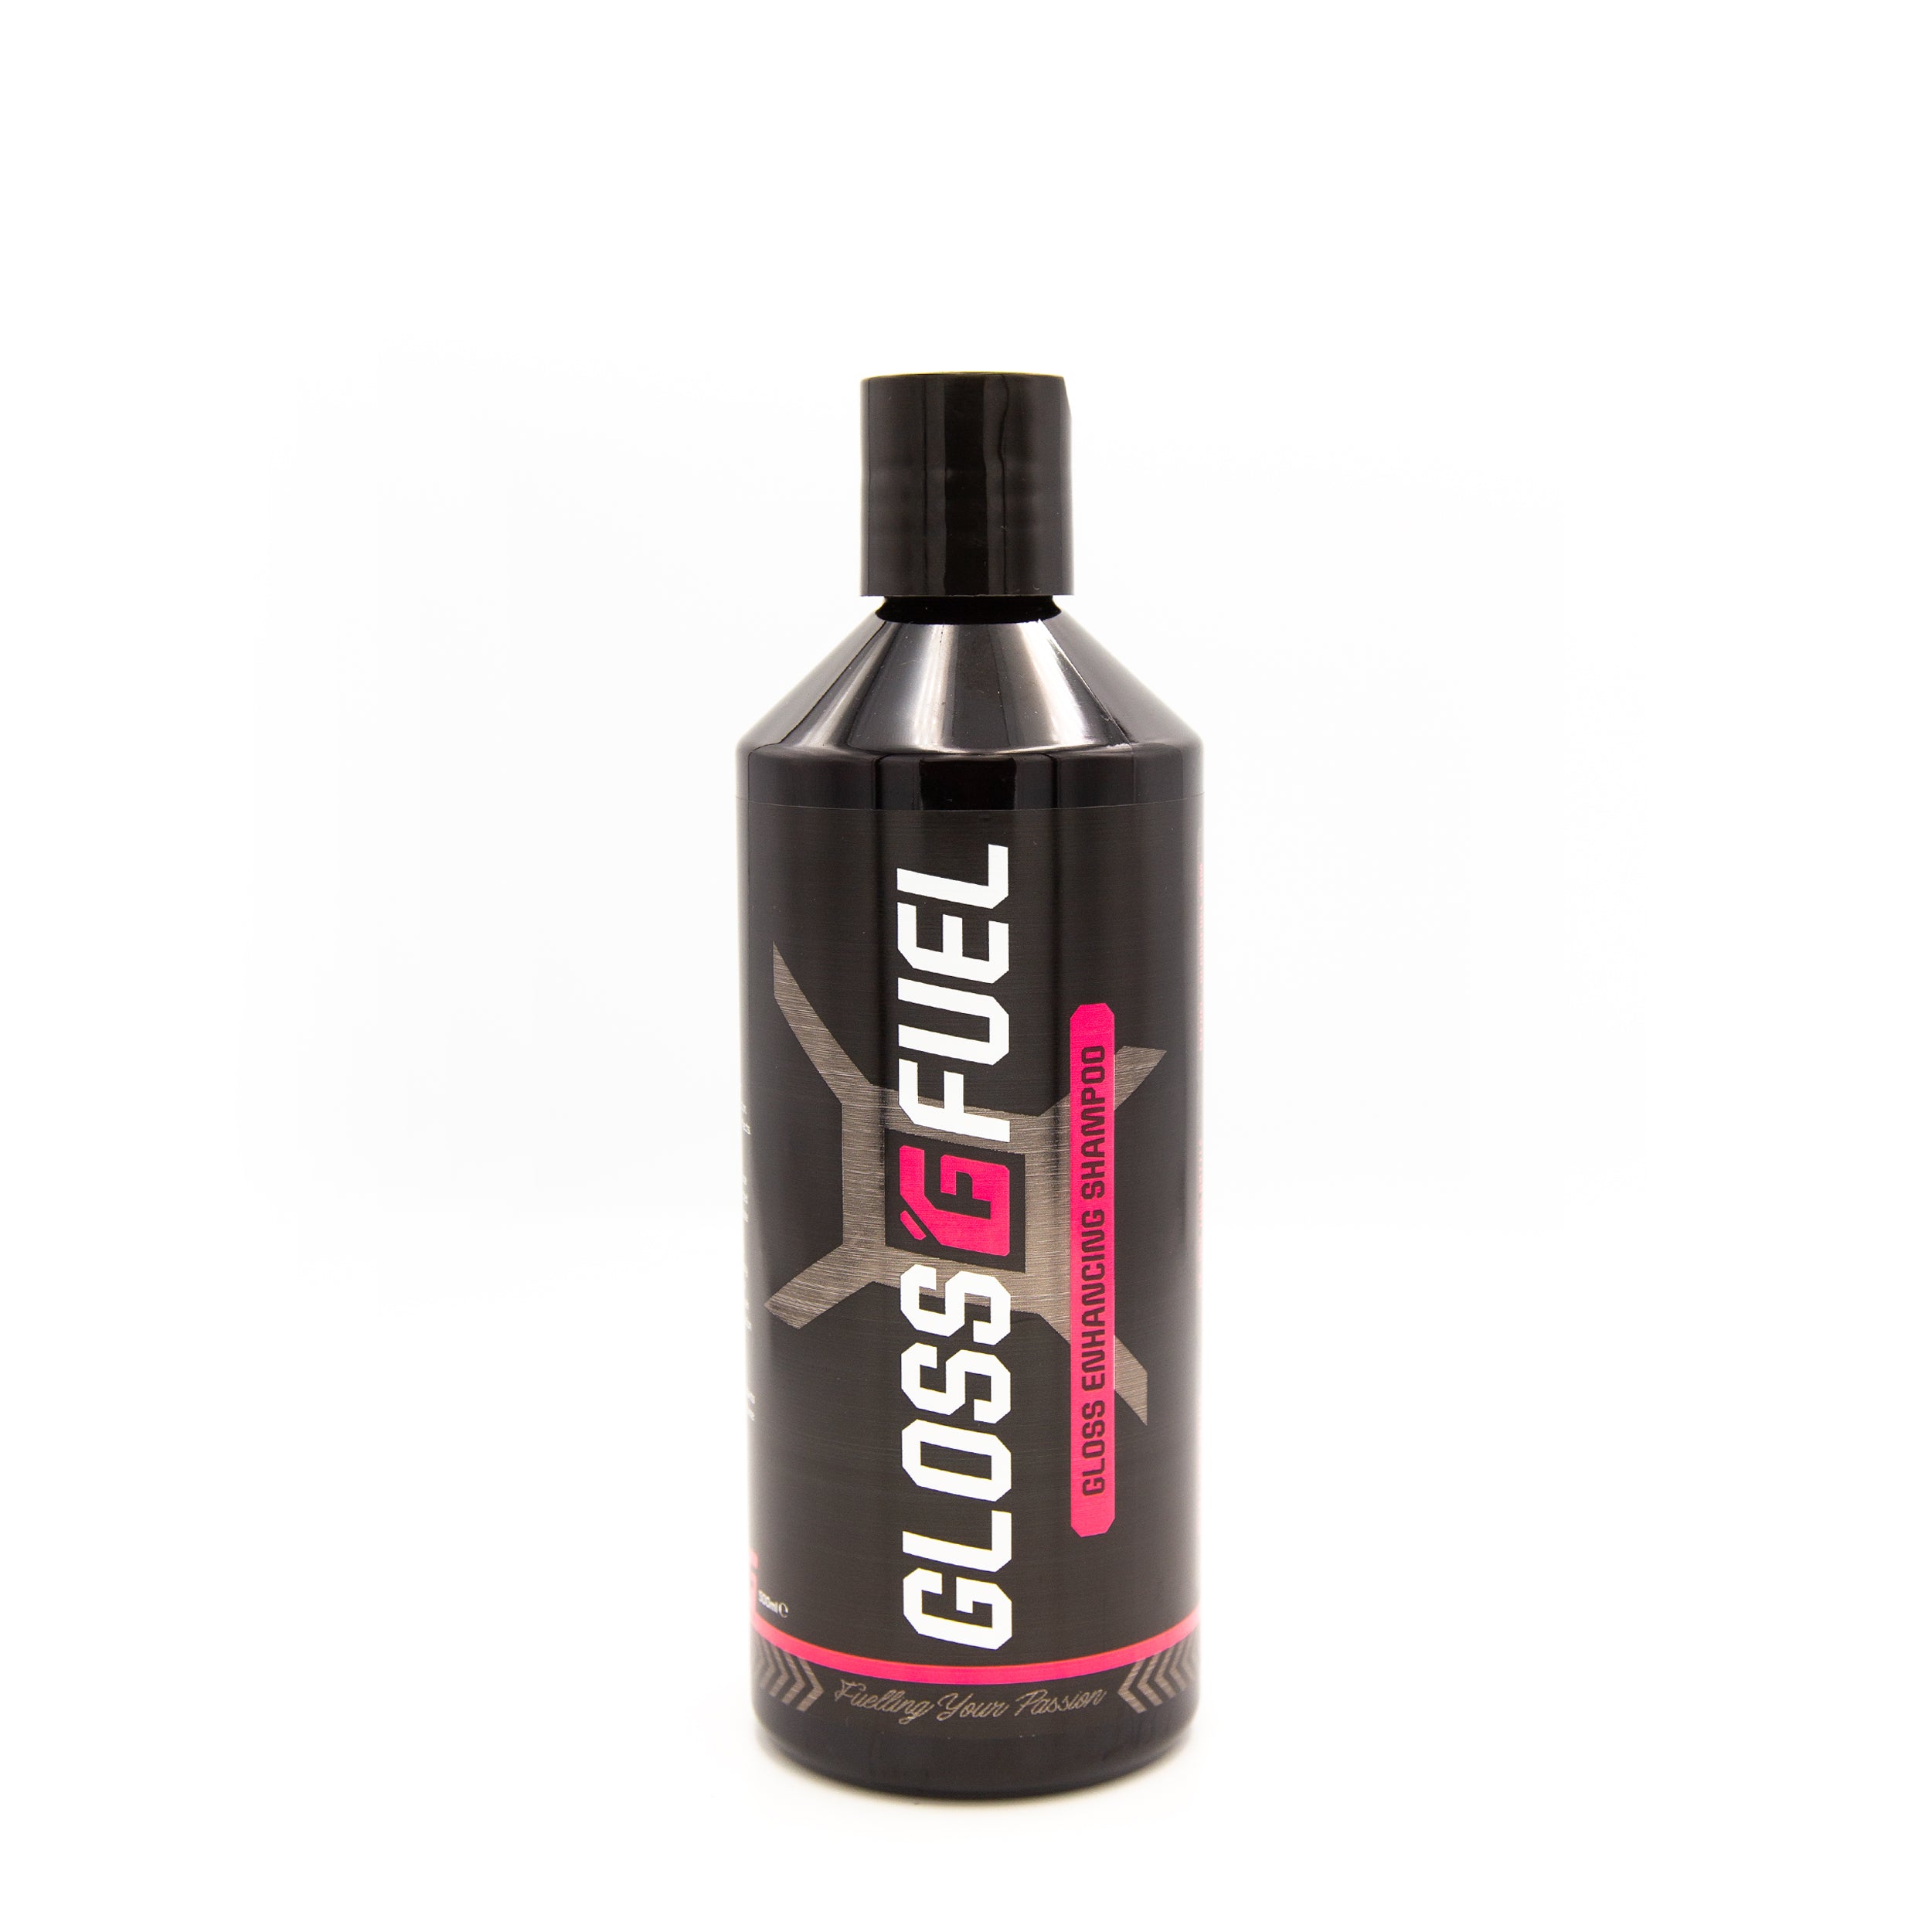 Gloss Fuel Gloss Enhancing Shampoo - 500ml Bottle